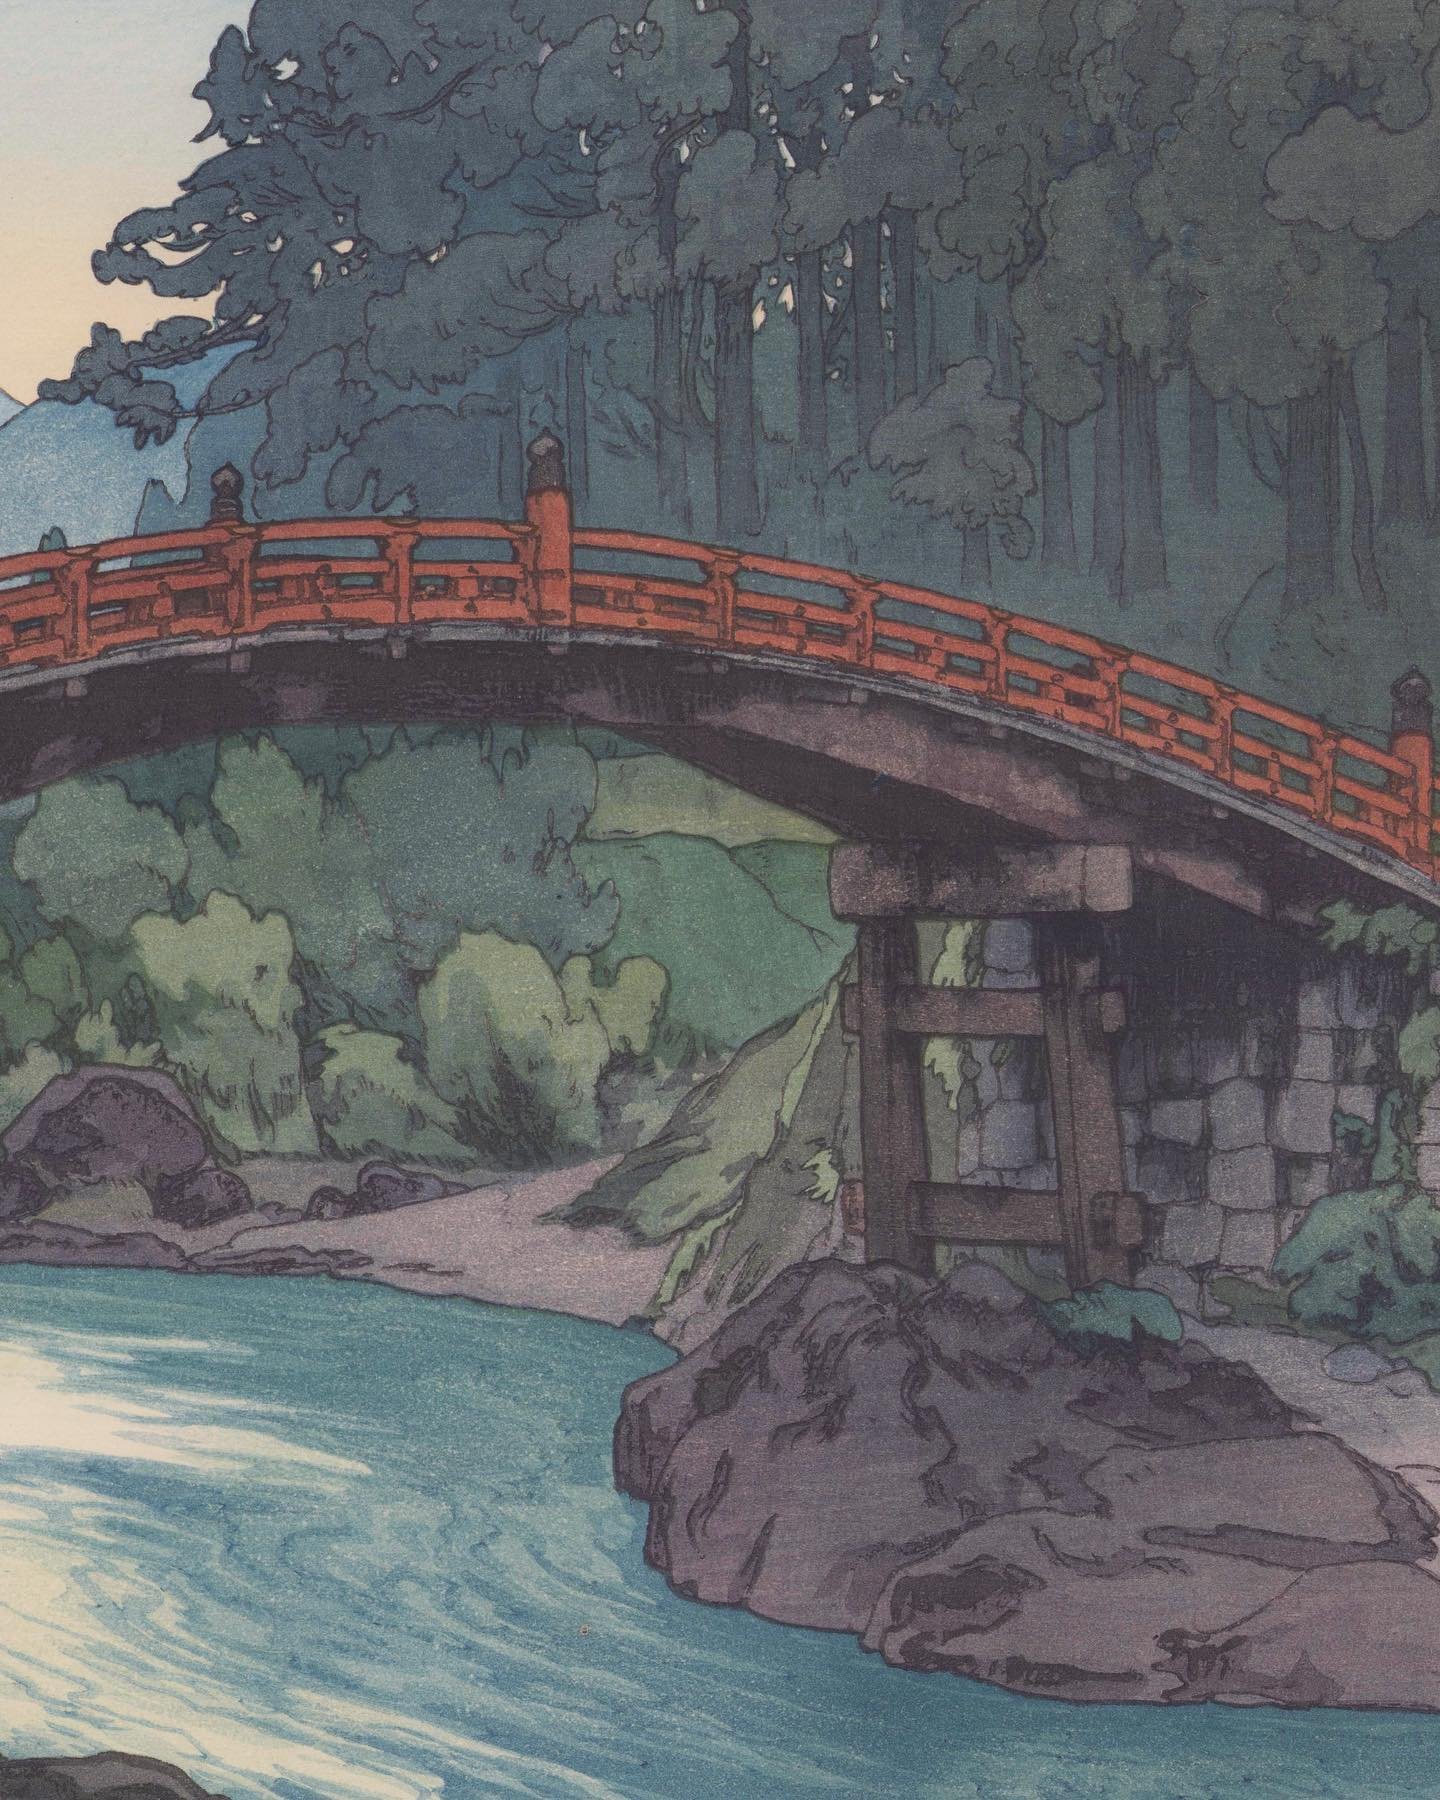 吉田博 Hiroshi Yoshida (1876-1950)

神桥 Sacred Bridge

Ca.1937

For more information on the artwork visit the website in our bio.
&middot;
&middot;
&middot;
&middot;
&middot;
&middot;
#artofukiyoe #ukiyoe #hiroshiyoshida #woodblockprint #antiqueprints #j